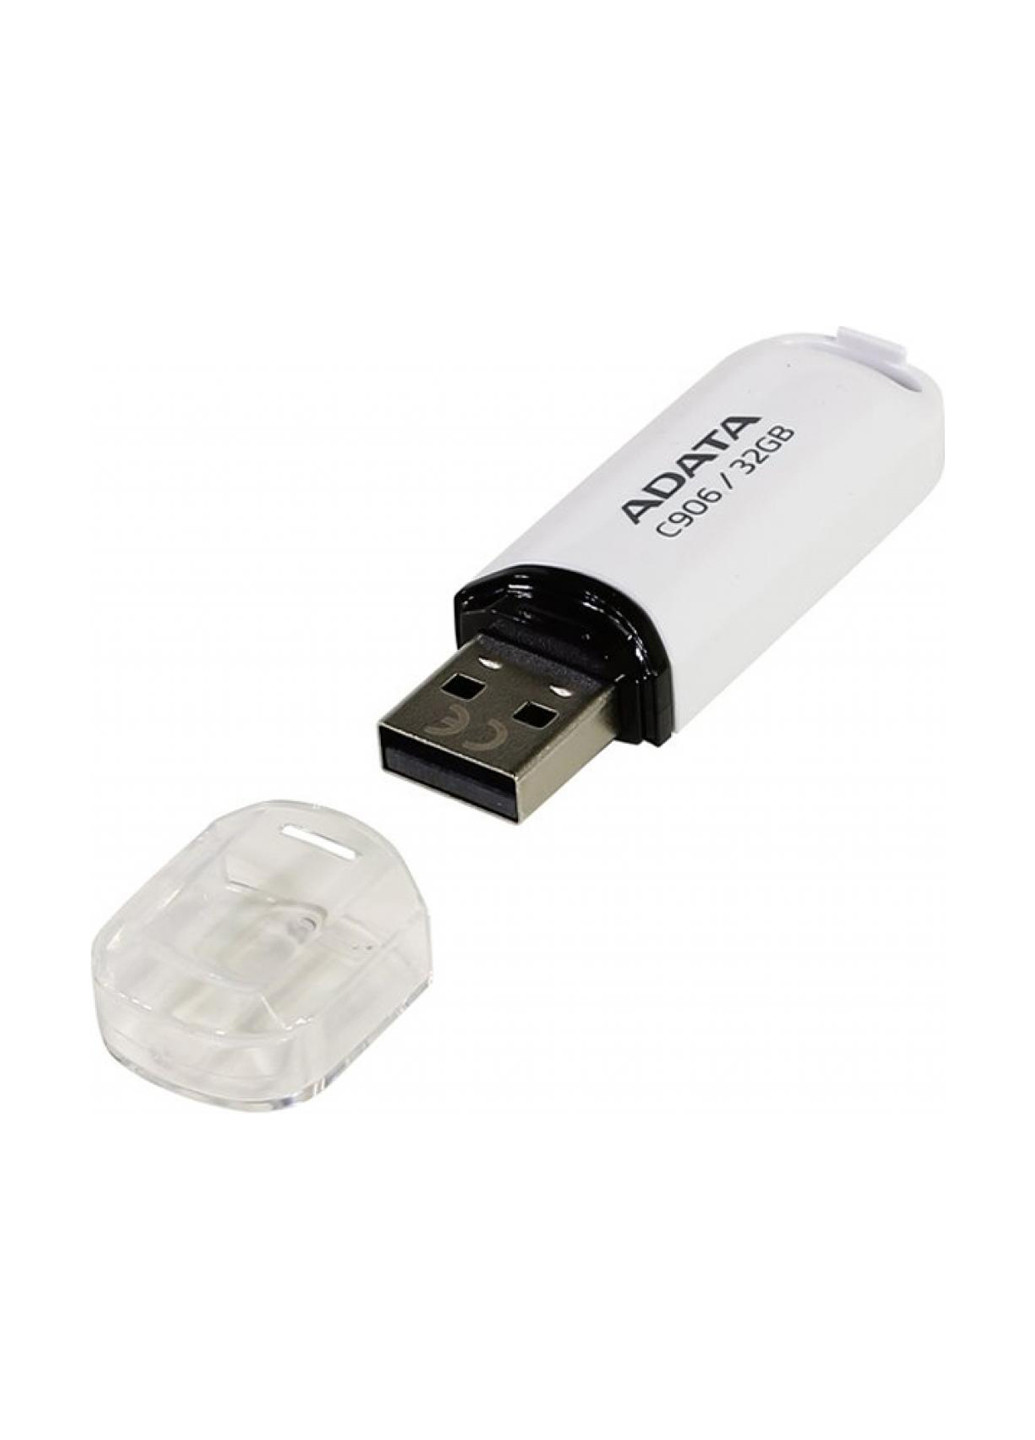 Флеш память USB 32GB USB 2.0 C906 White (AC906-32G-RWH) ADATA Флеш память USB ADATA 32GB USB 2.0 C906 White (AC906-32G-RWH) белые